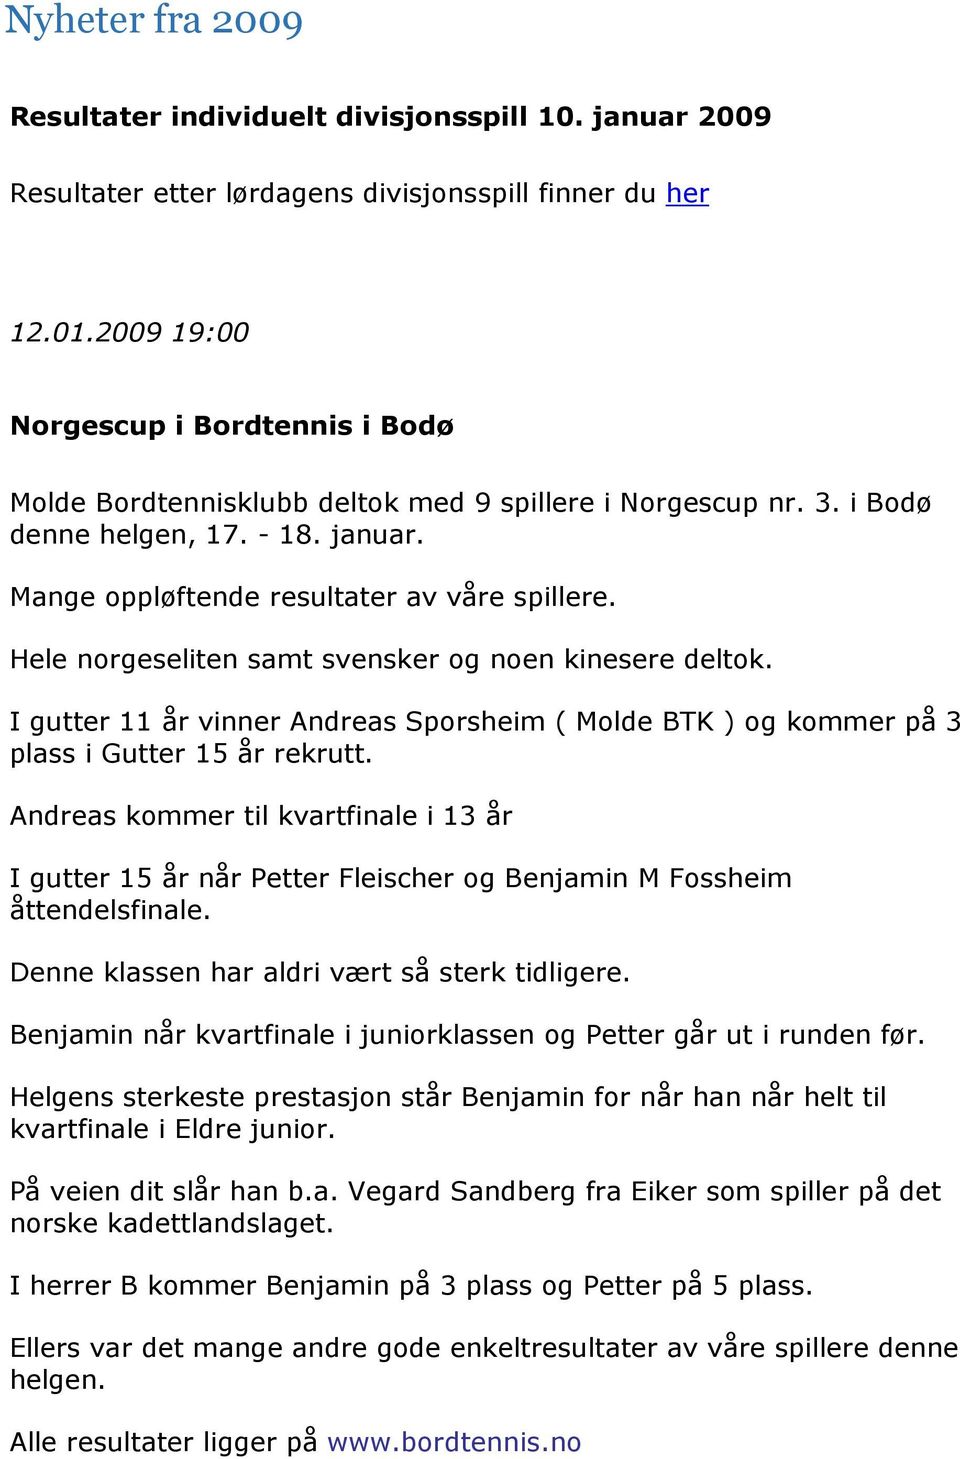 Hele norgeseliten samt svensker og noen kinesere deltok. I gutter 11 år vinner Andreas Sporsheim ( Molde BTK ) og kommer på 3 plass i Gutter 15 år rekrutt.